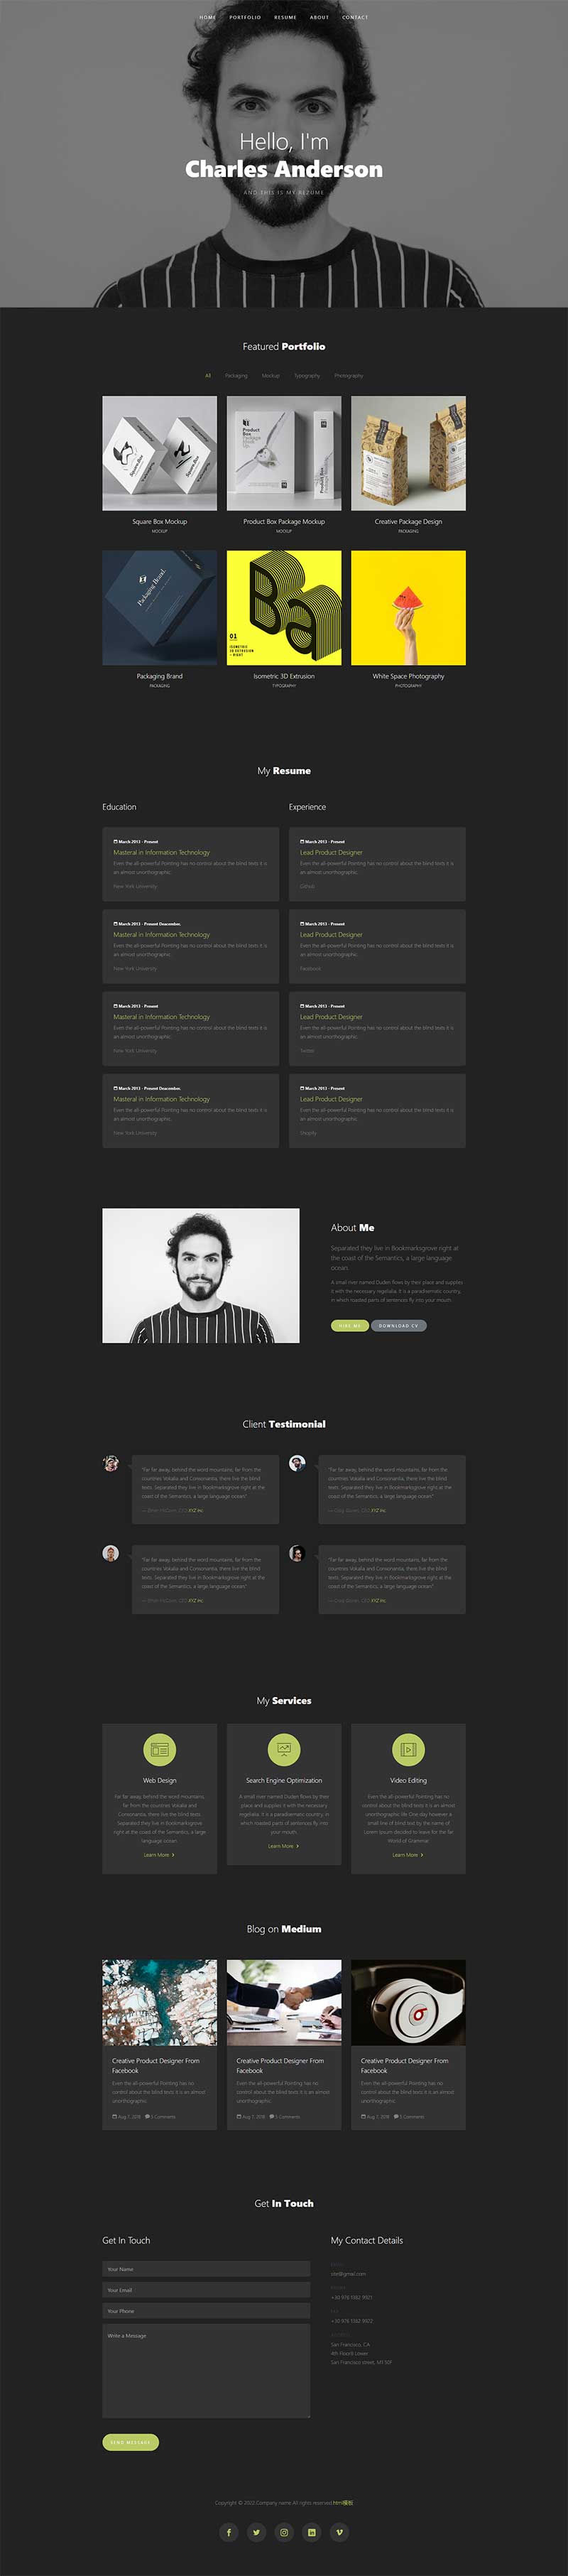 个人设计师作品展示简历网页模板